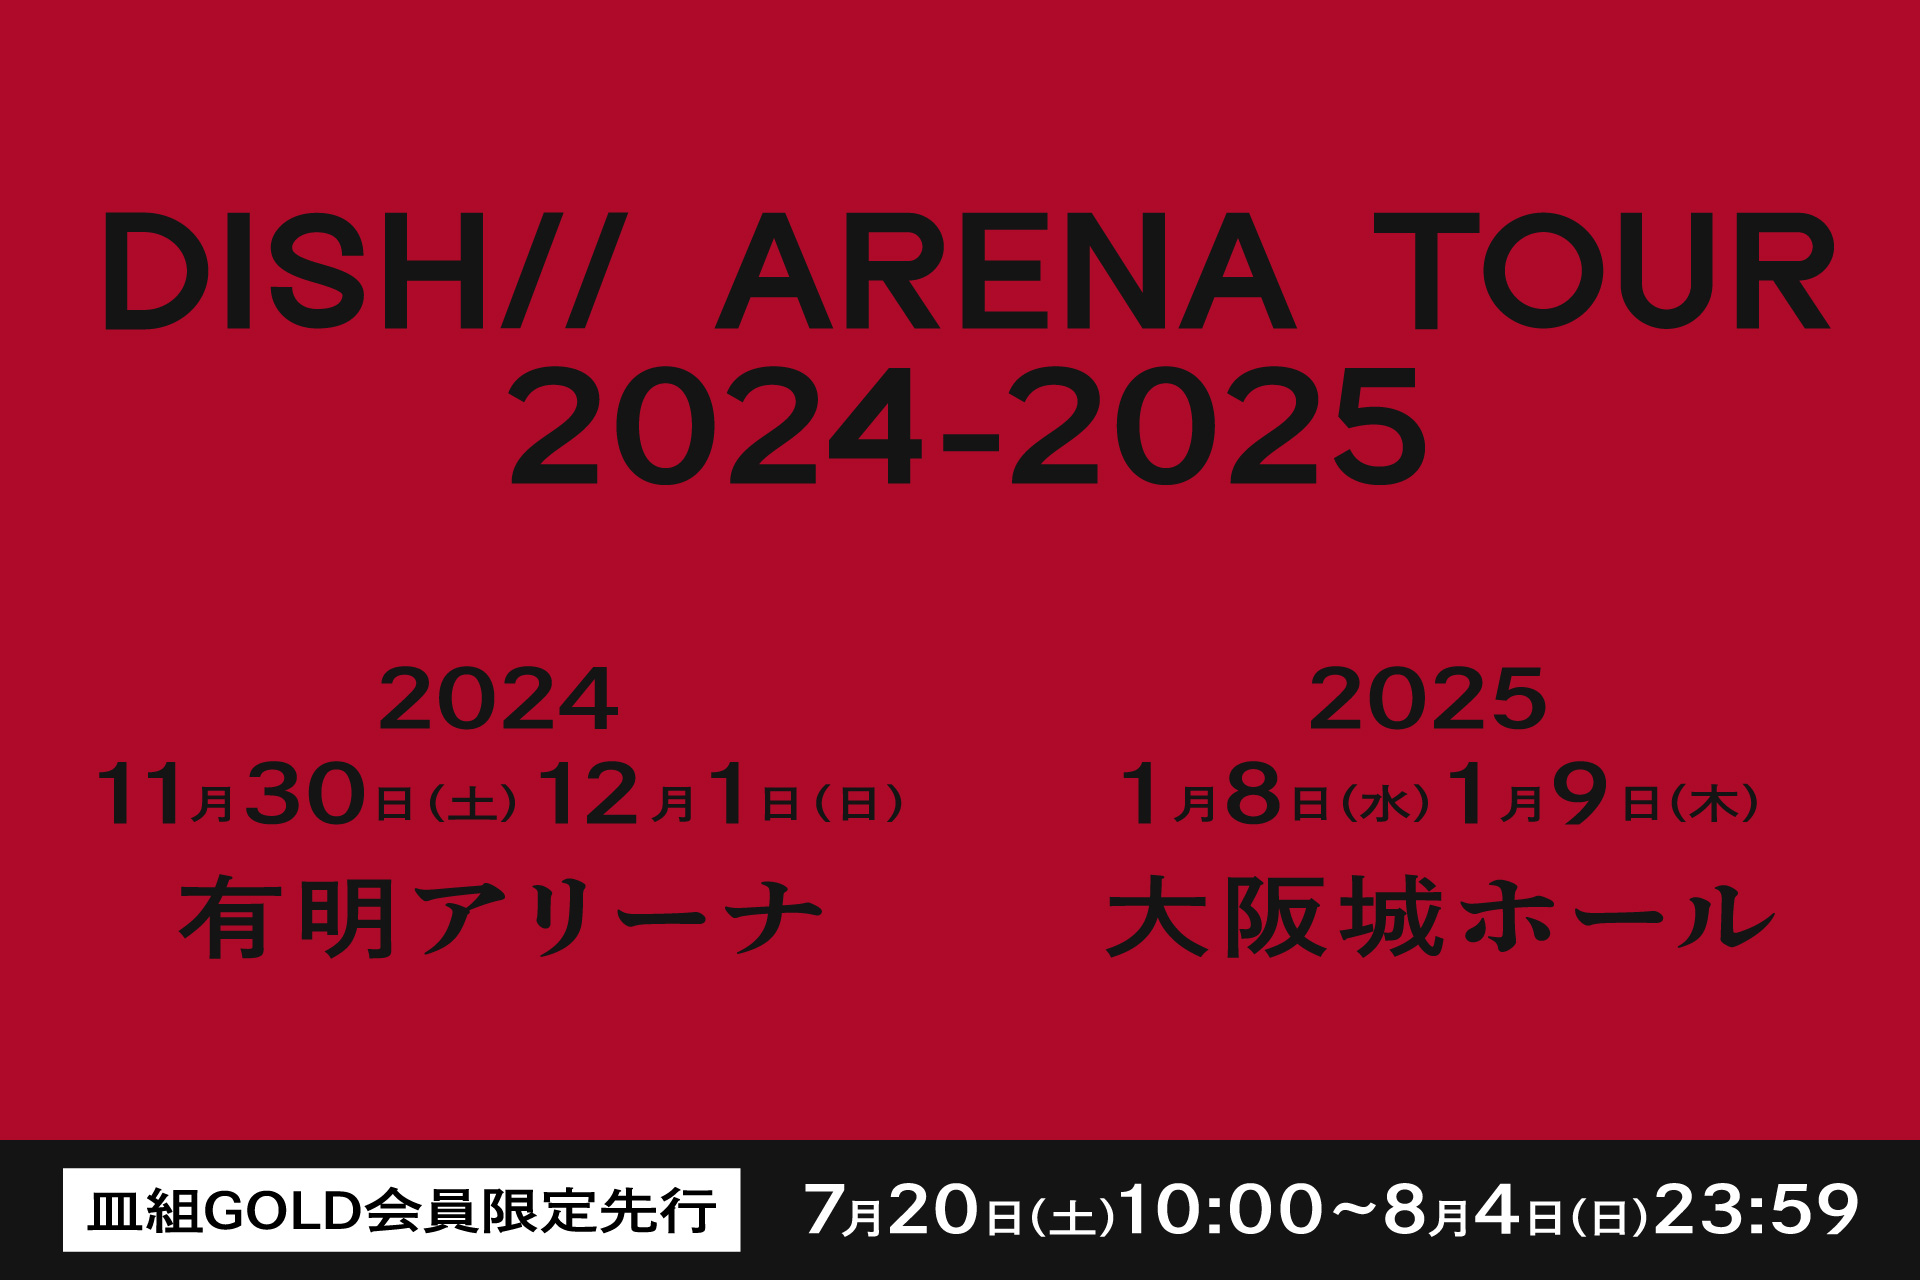 DISH// ARENA TOUR 2024-2025